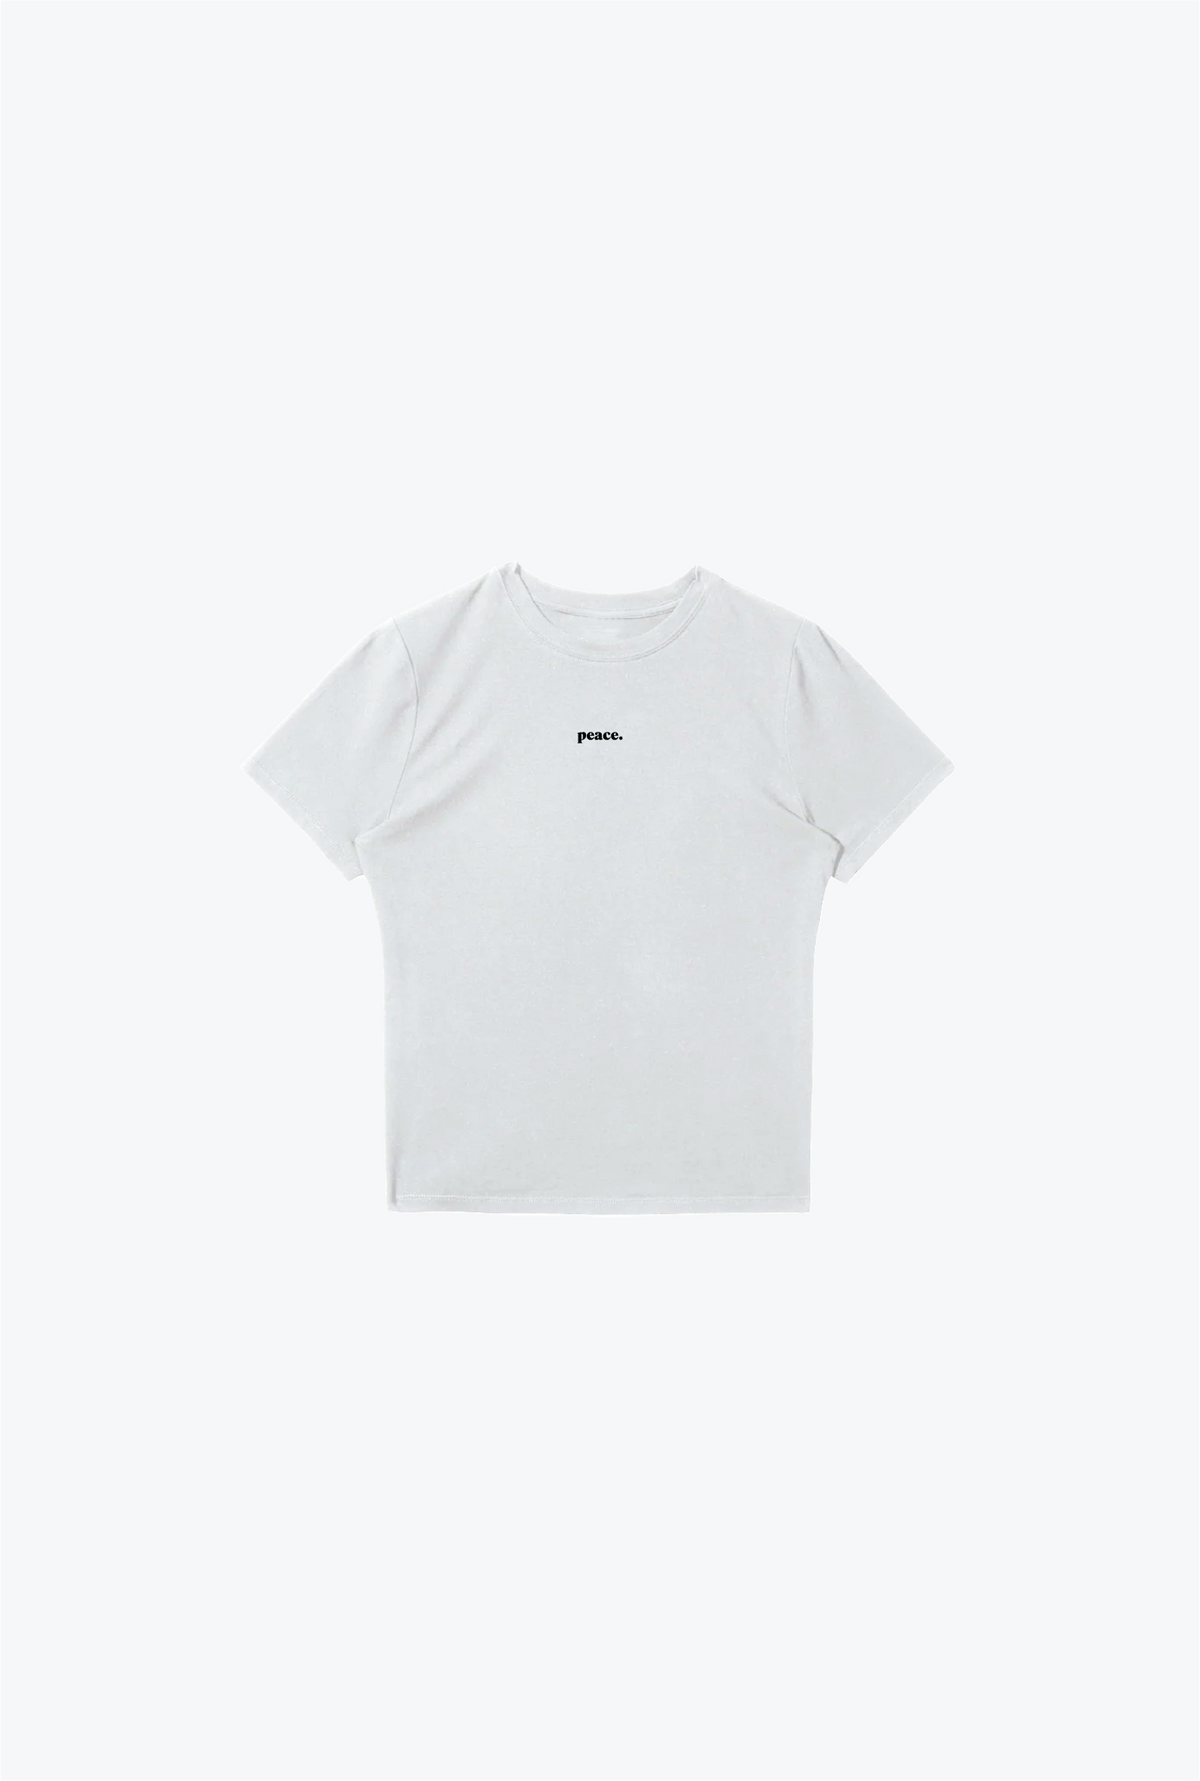 P/C Basics Baby T Shirt - White